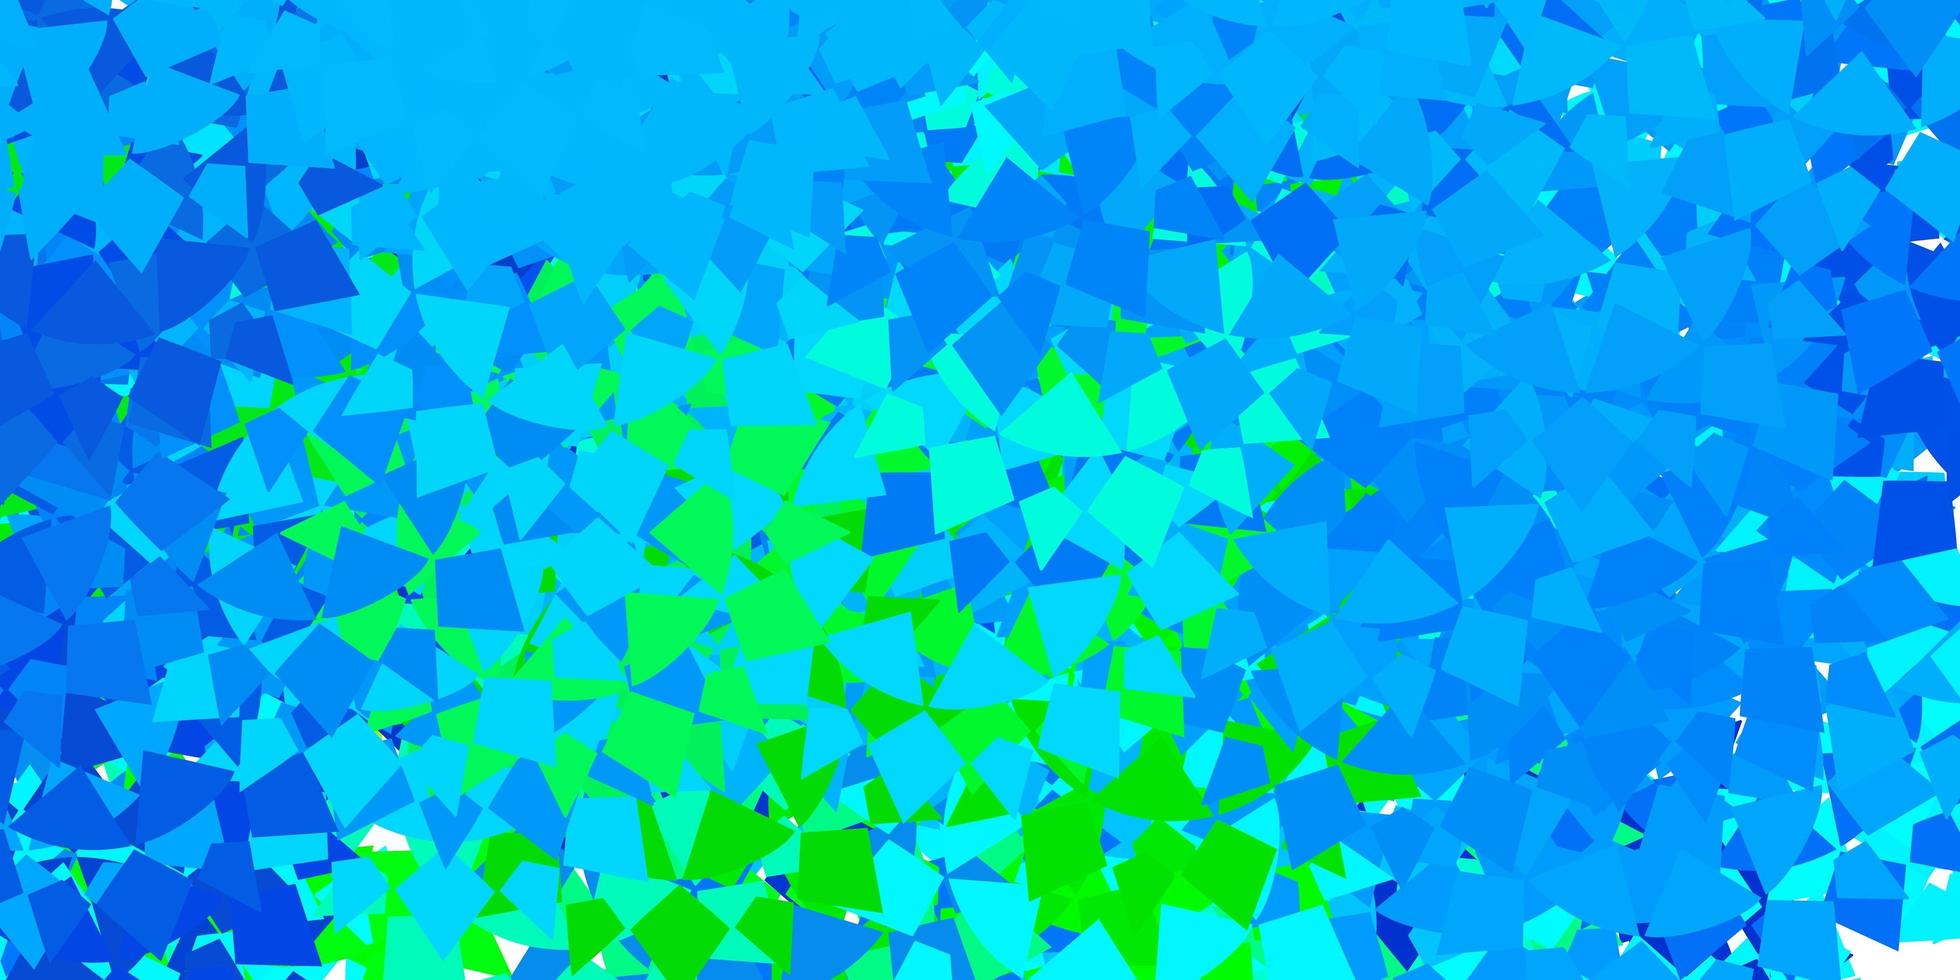 mörkblå grön vektorbakgrund med polygonala former vektor